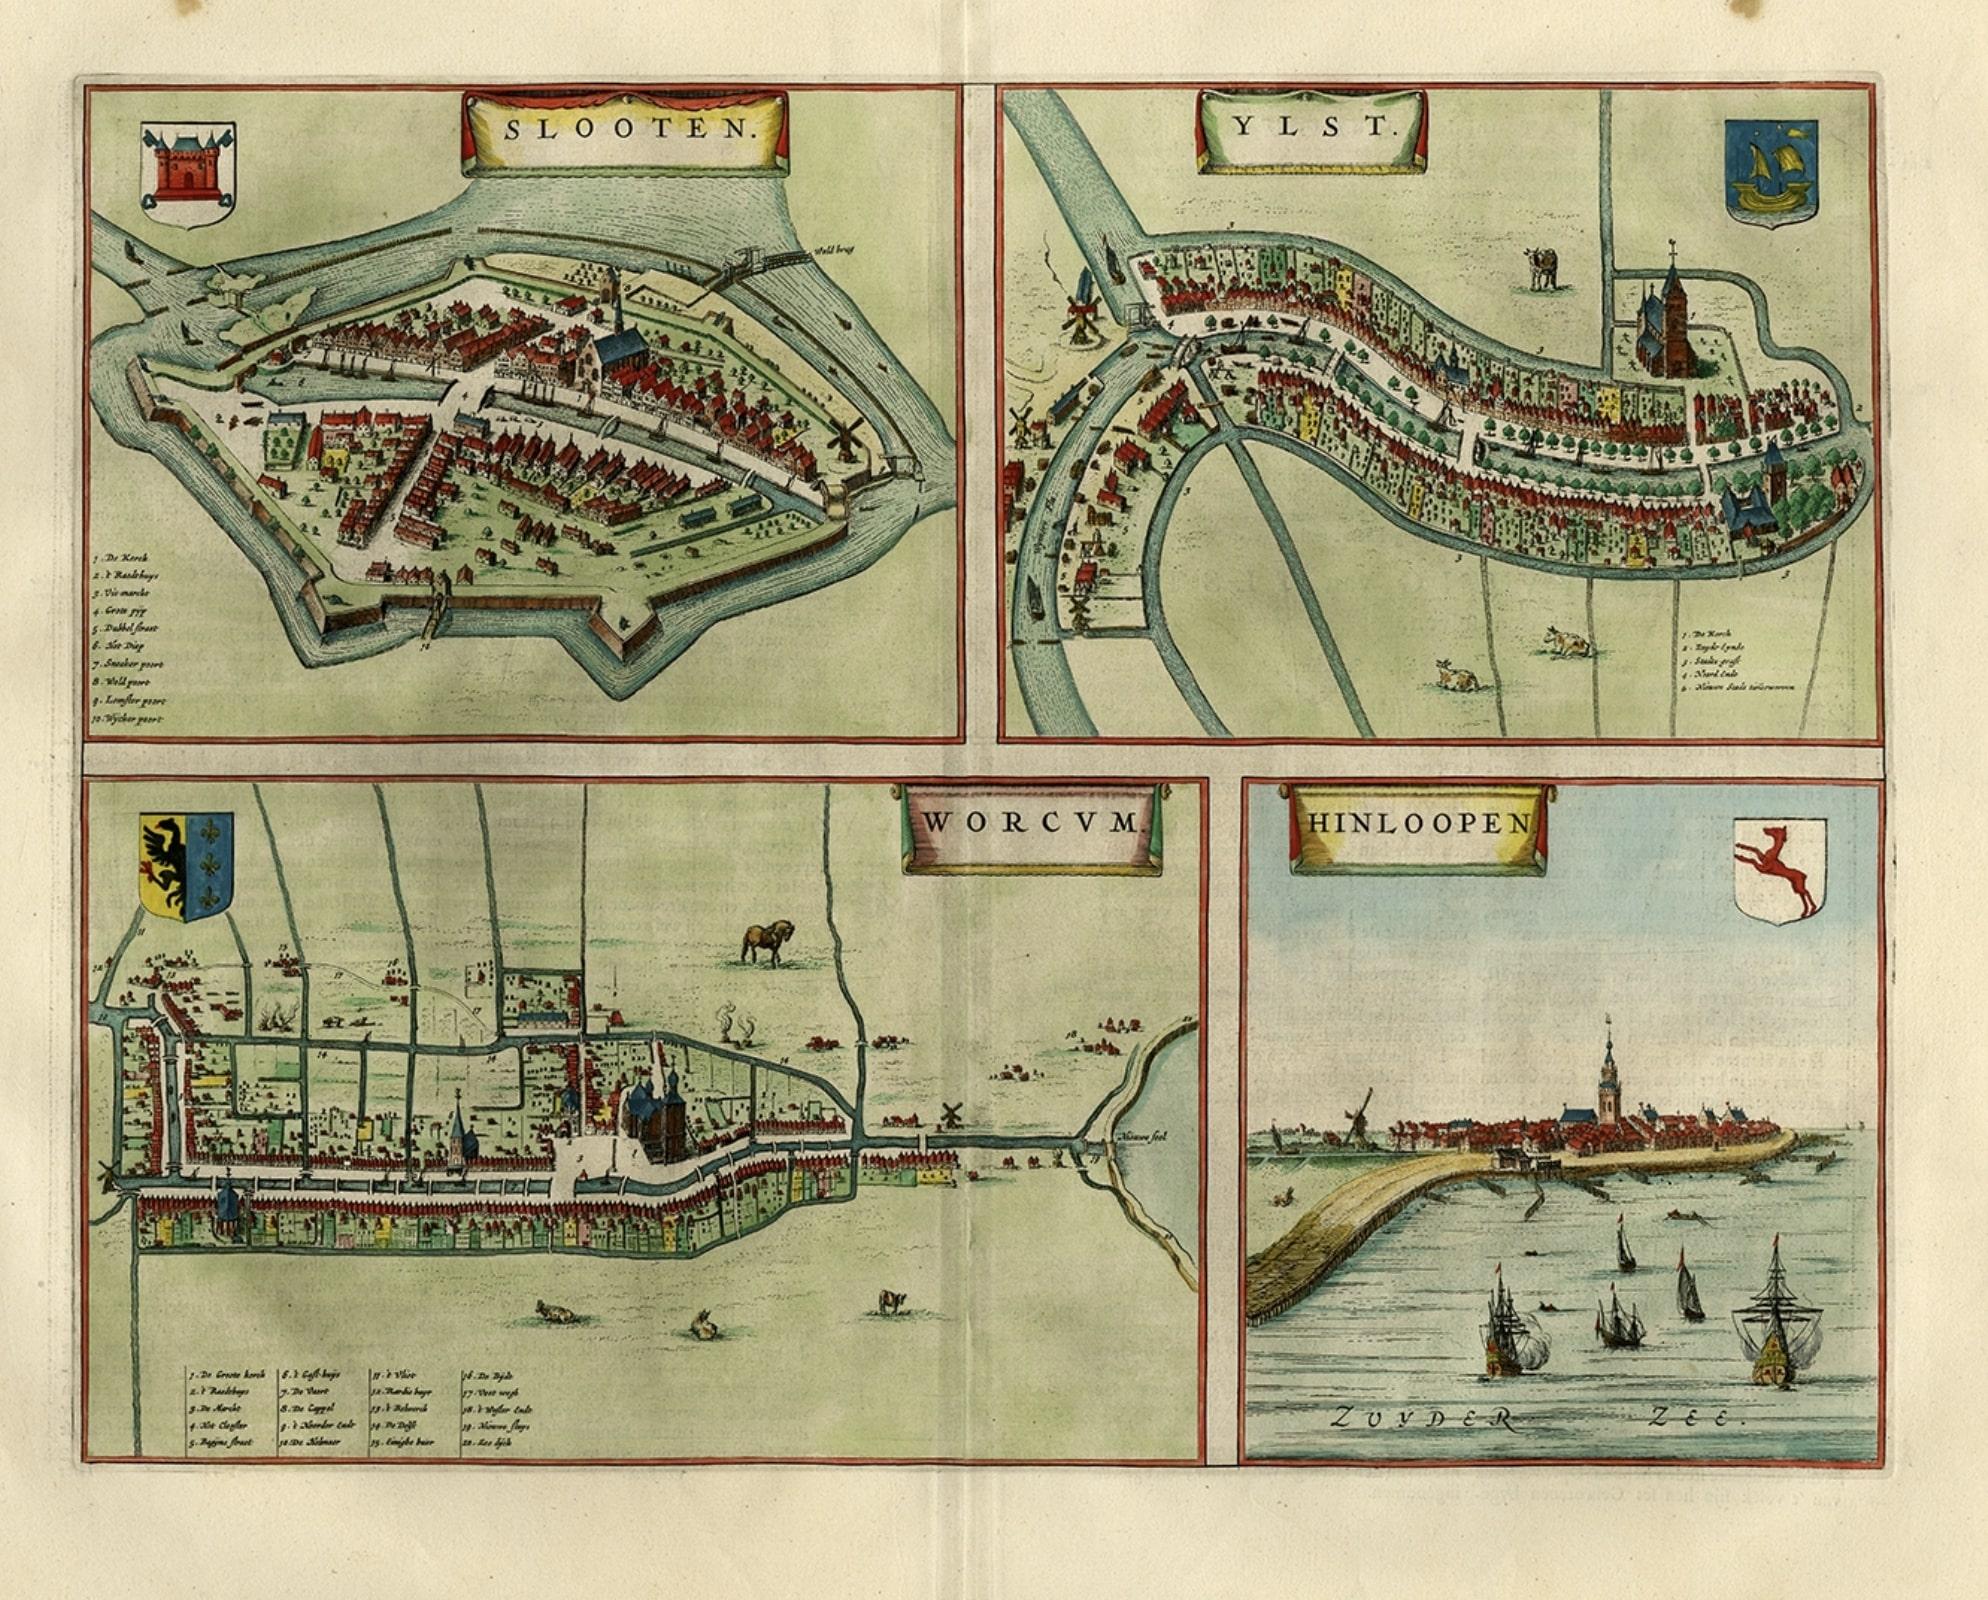 Milieu du XVIIe siècle Carte ancienne des villes flamandes Sloten, Ylst, Workum et Hindelopen par Blaeu, 1652 en vente